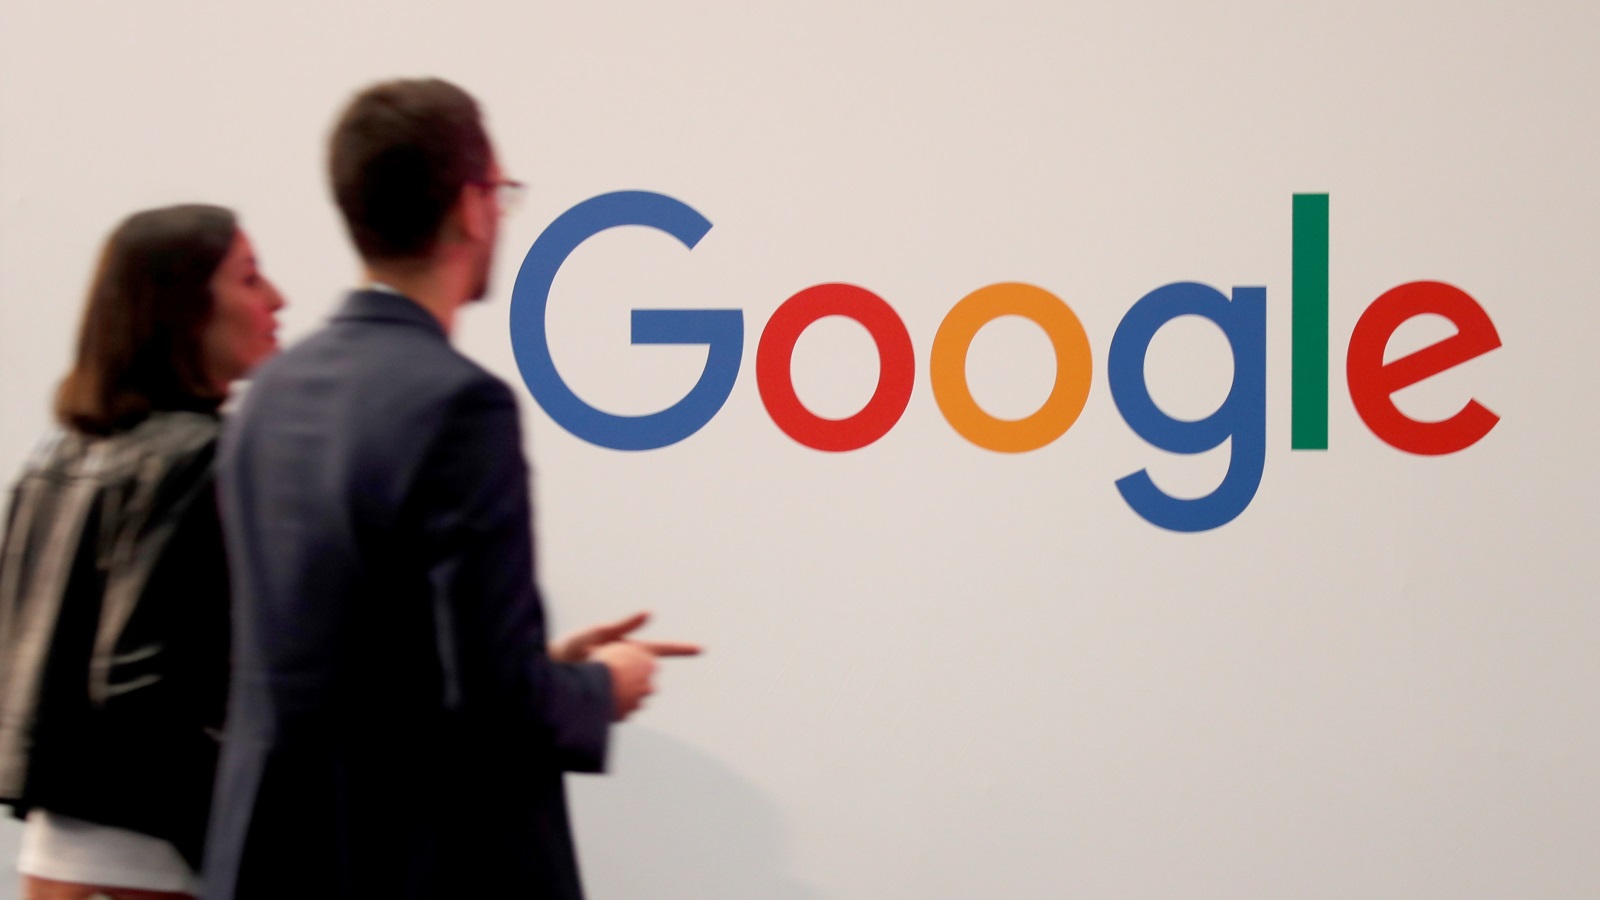 جميع الإضافات الجديدة التي تقدمها غوغل باستمرار إلى أندرويد عبر غوغل بلاي، لن تكون متاحة لهواوي (رويترز)